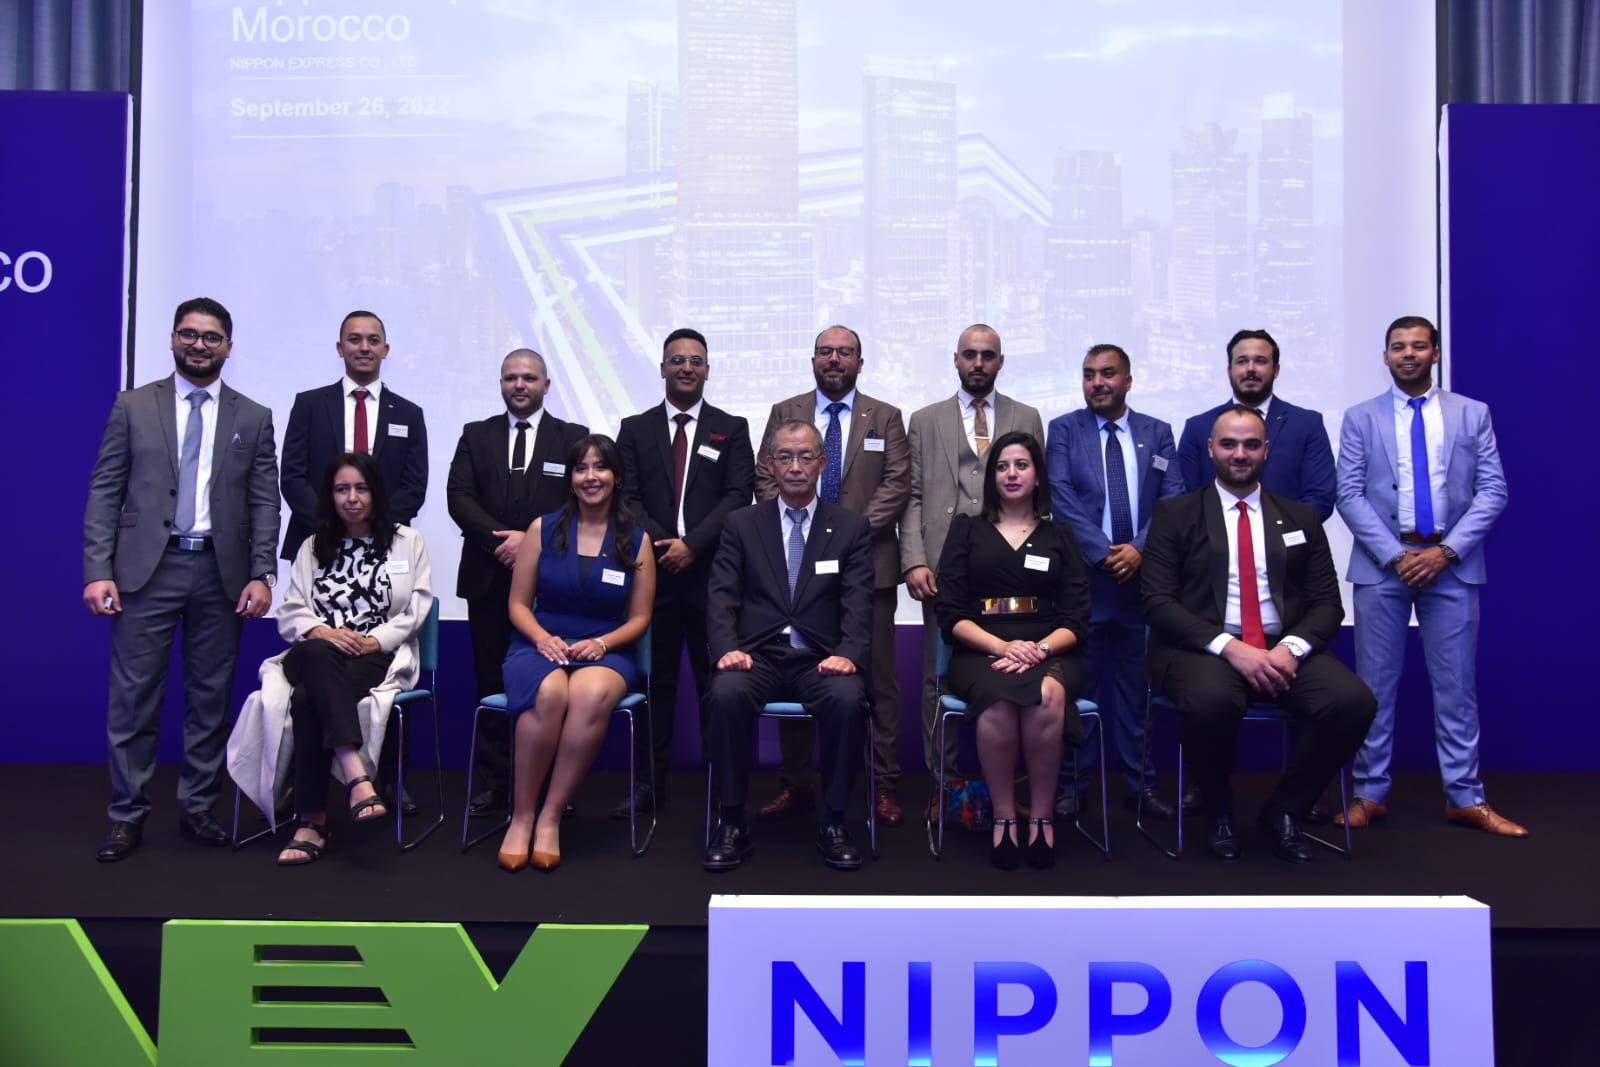 Le Groupe Japonais de logistique «Nippon Express» s’implante officiellement au Maroc